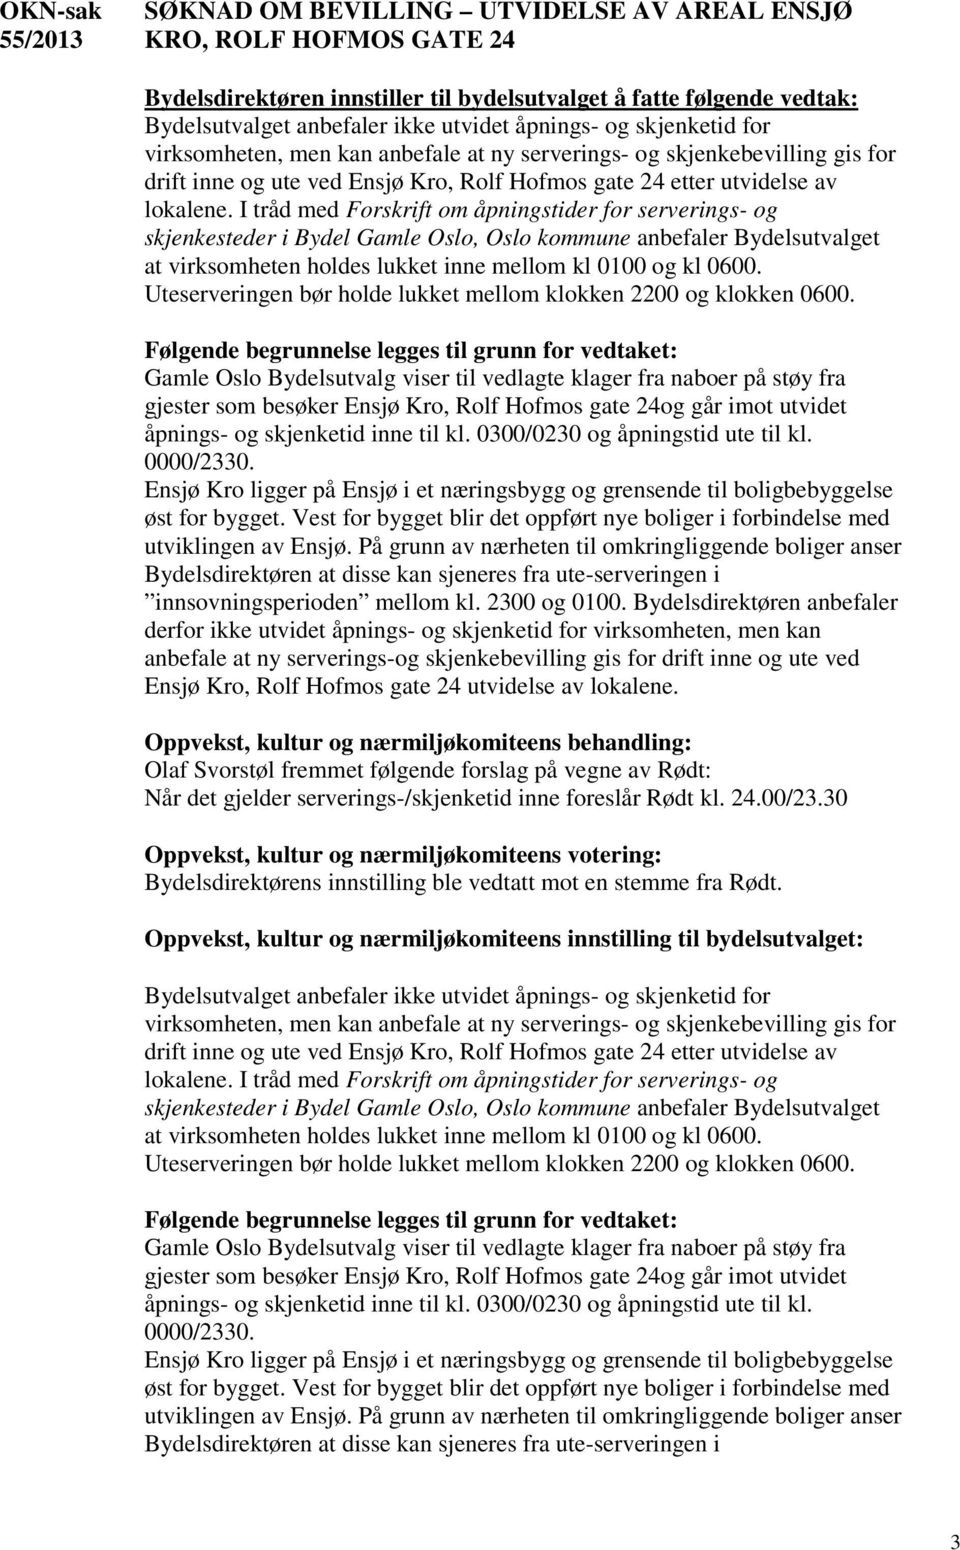 I tråd med Forskrift om åpningstider for serverings- og skjenkesteder i Bydel Gamle Oslo, Oslo kommune anbefaler Bydelsutvalget at virksomheten holdes lukket inne mellom kl 0100 og kl 0600.